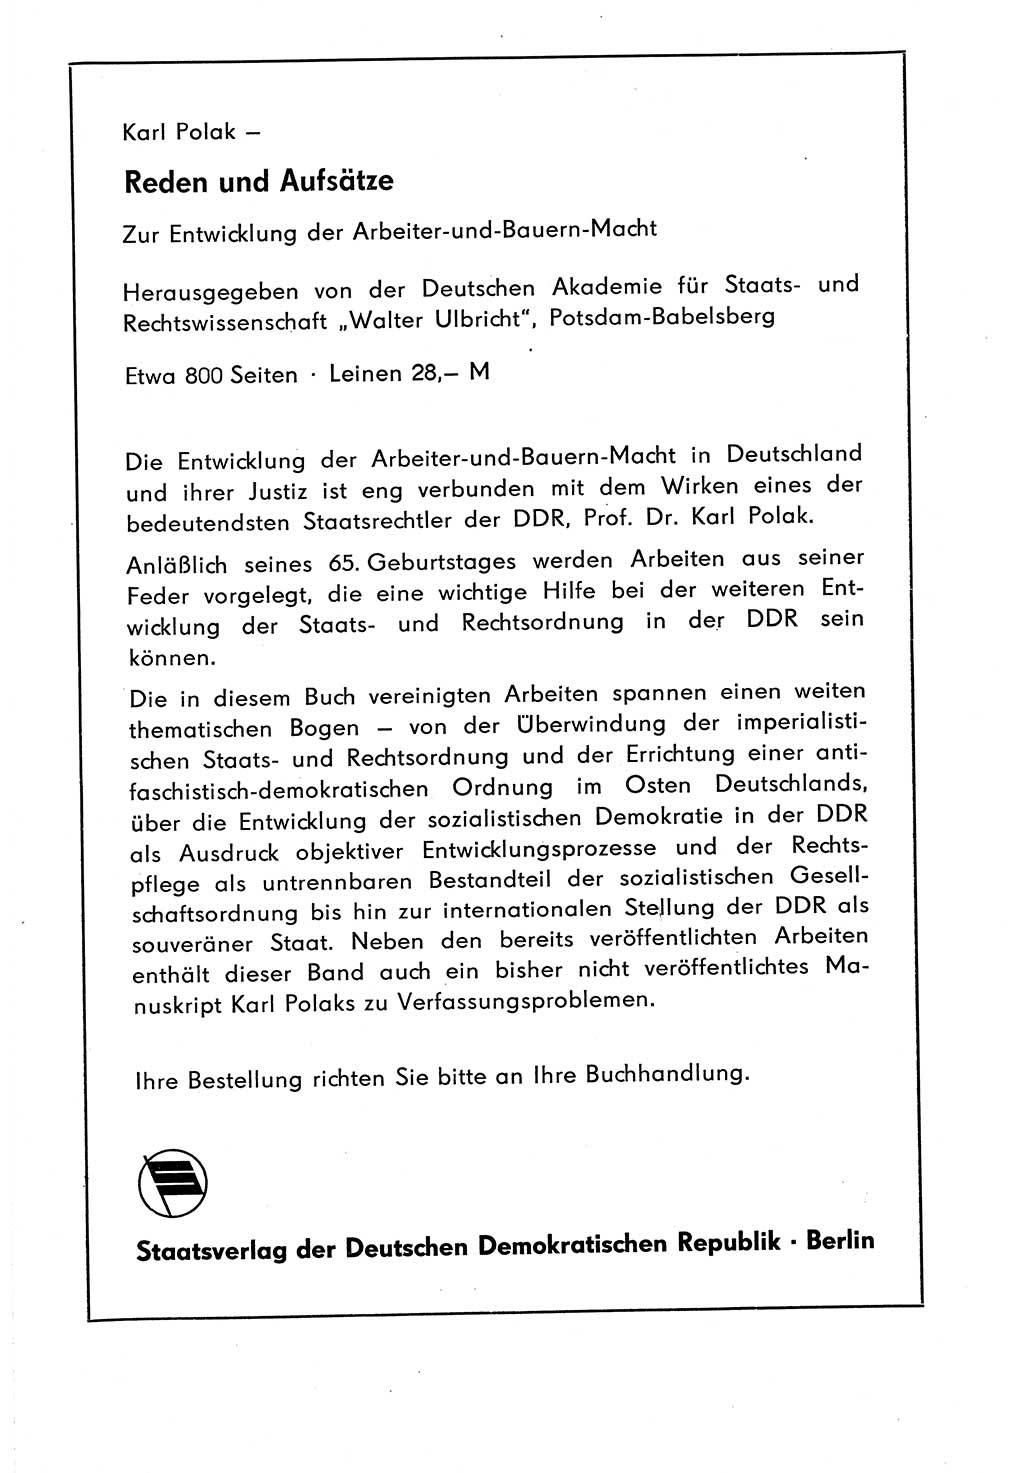 Staat und Recht (StuR), 17. Jahrgang [Deutsche Demokratische Republik (DDR)] 1968, Seite 1726 (StuR DDR 1968, S. 1726)